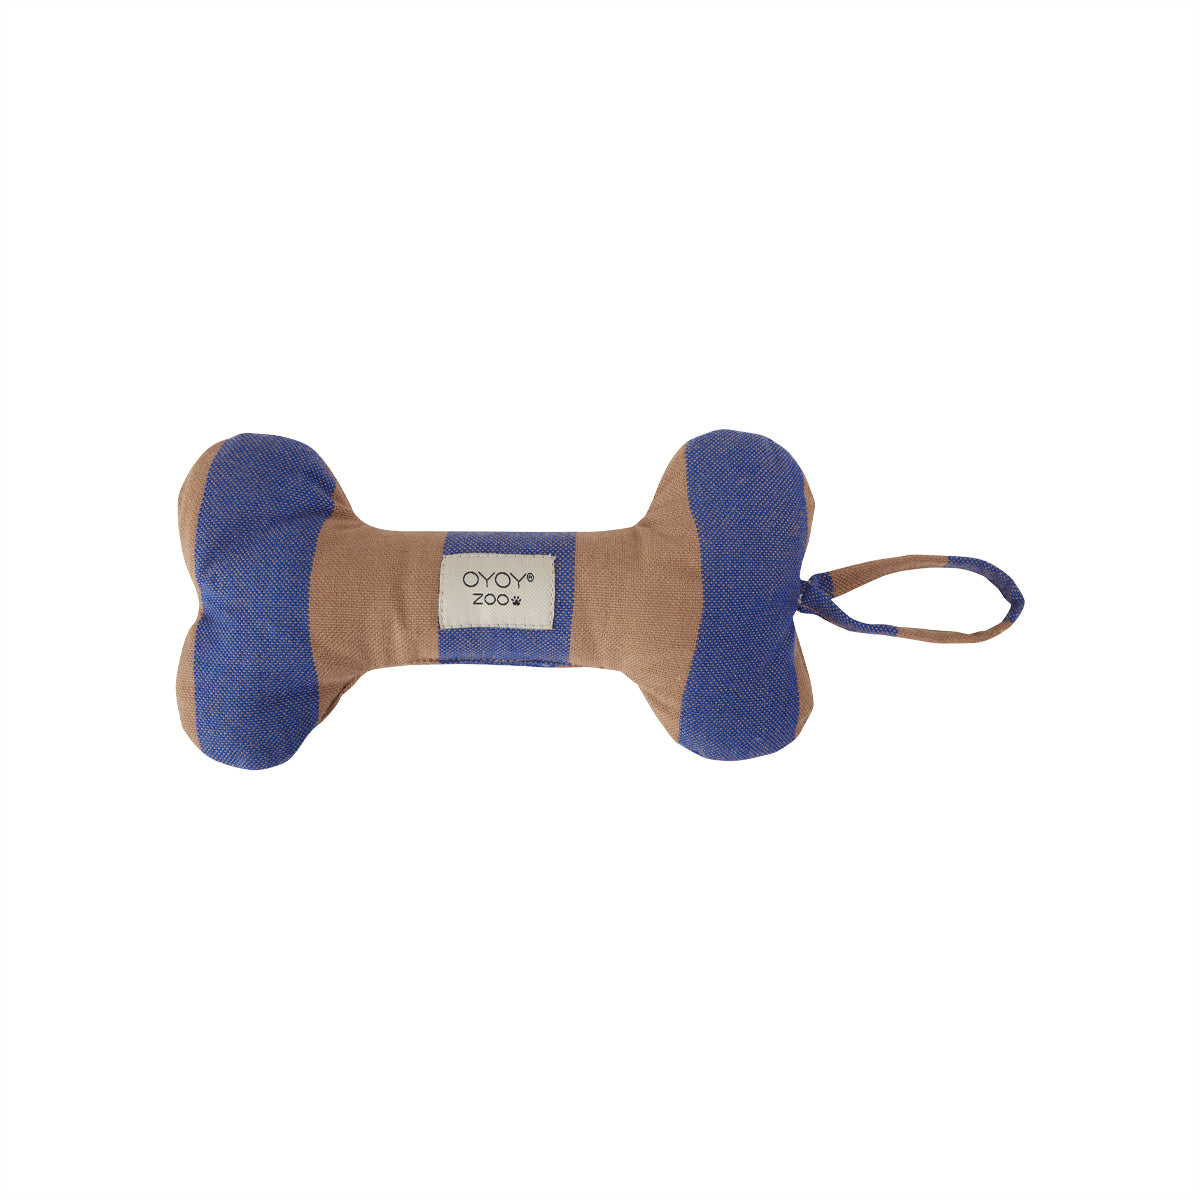 OYOY ZOO Ashi Dog Toy - Small Dog Toy 307 Caramel / Blue